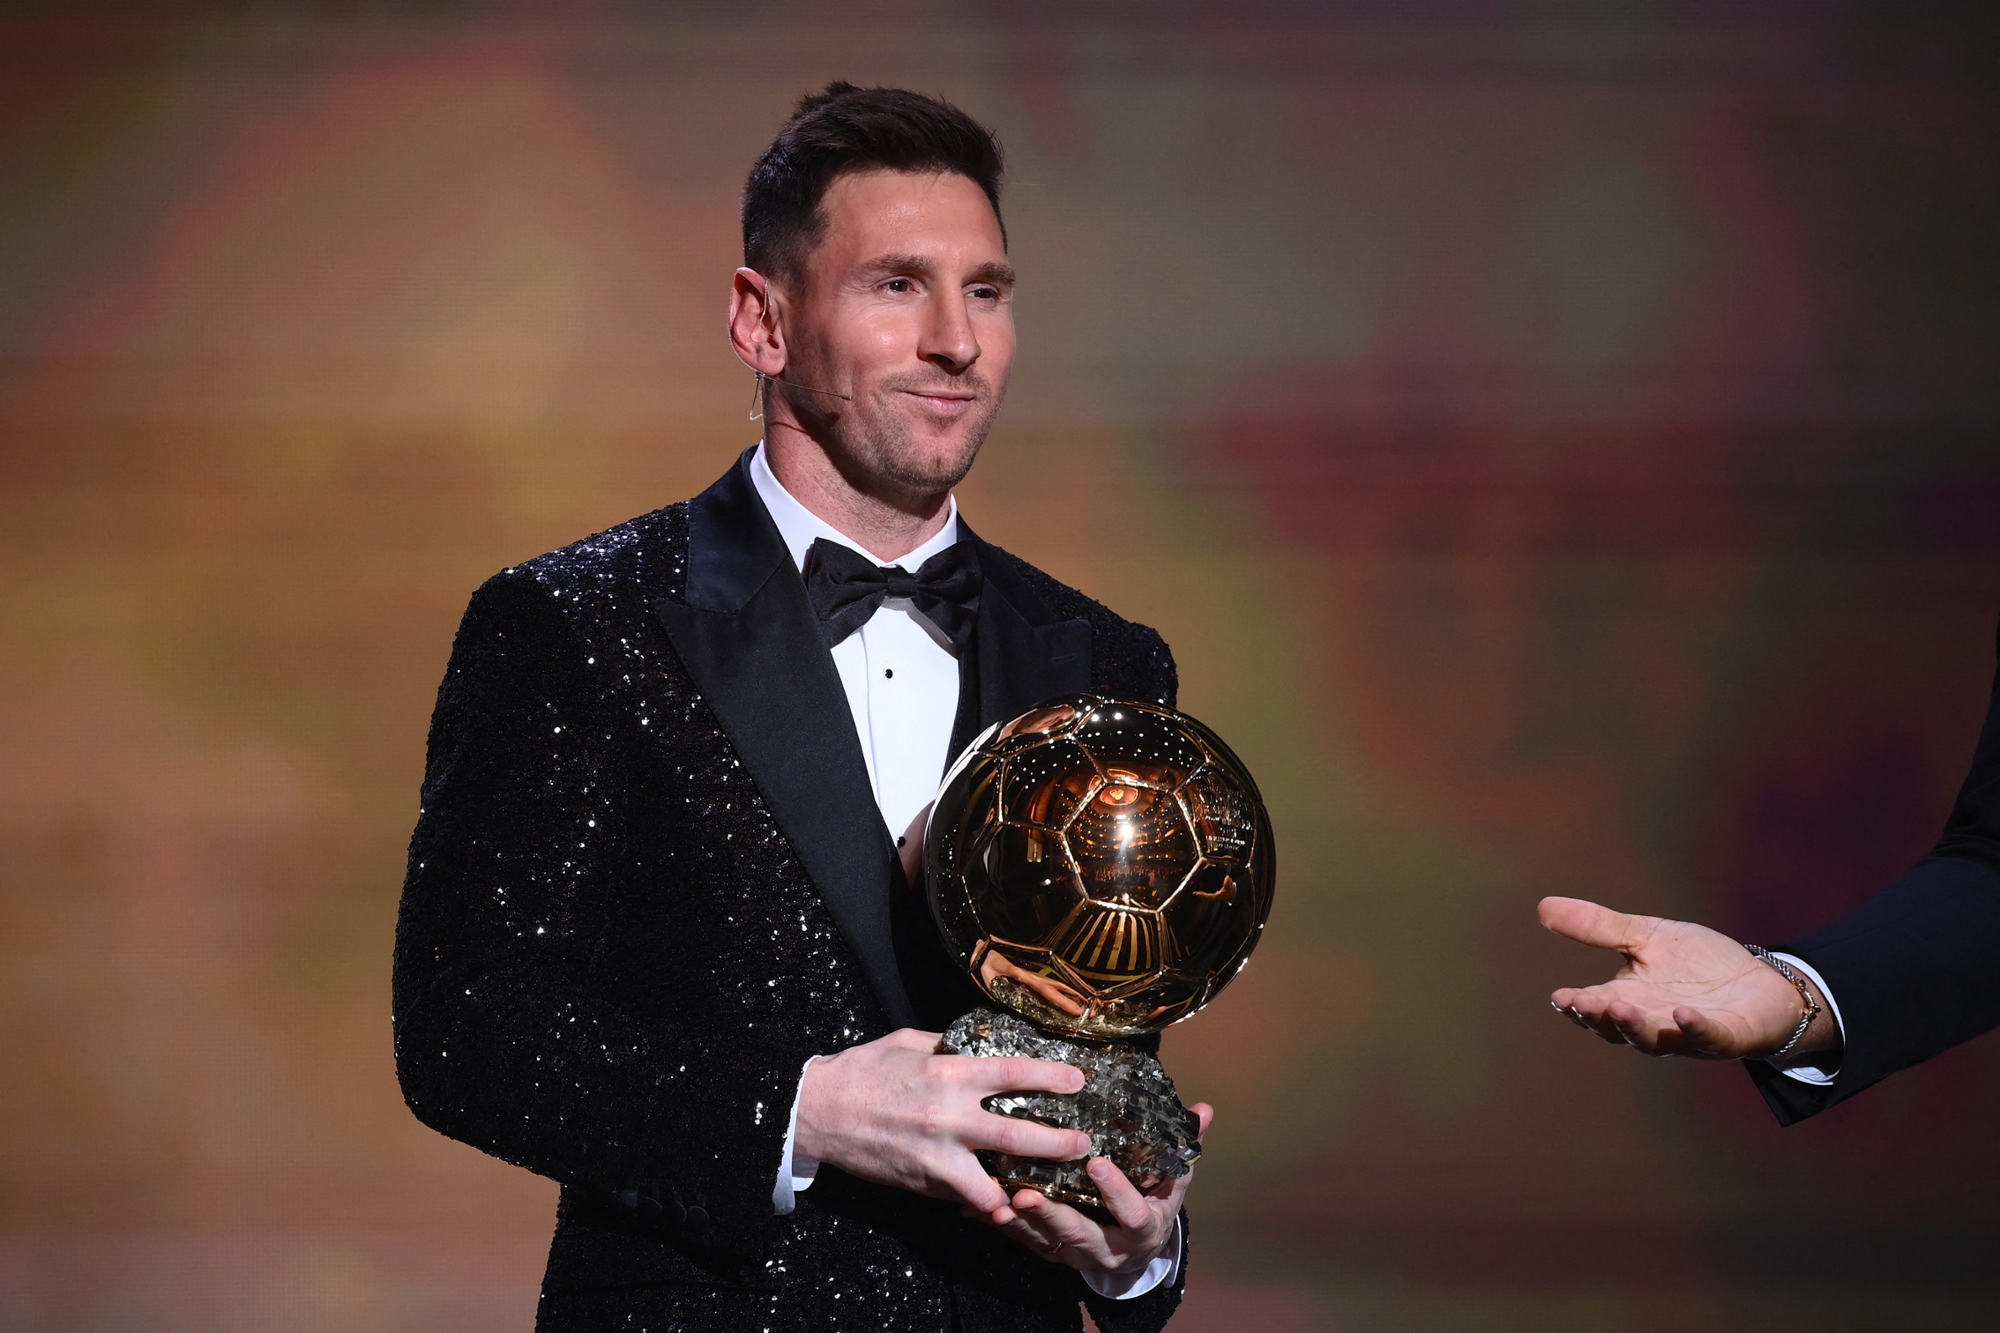 La photo originale de Messi avec ses 7 Ballons d’or qui devient virale sur les réseaux sociaux